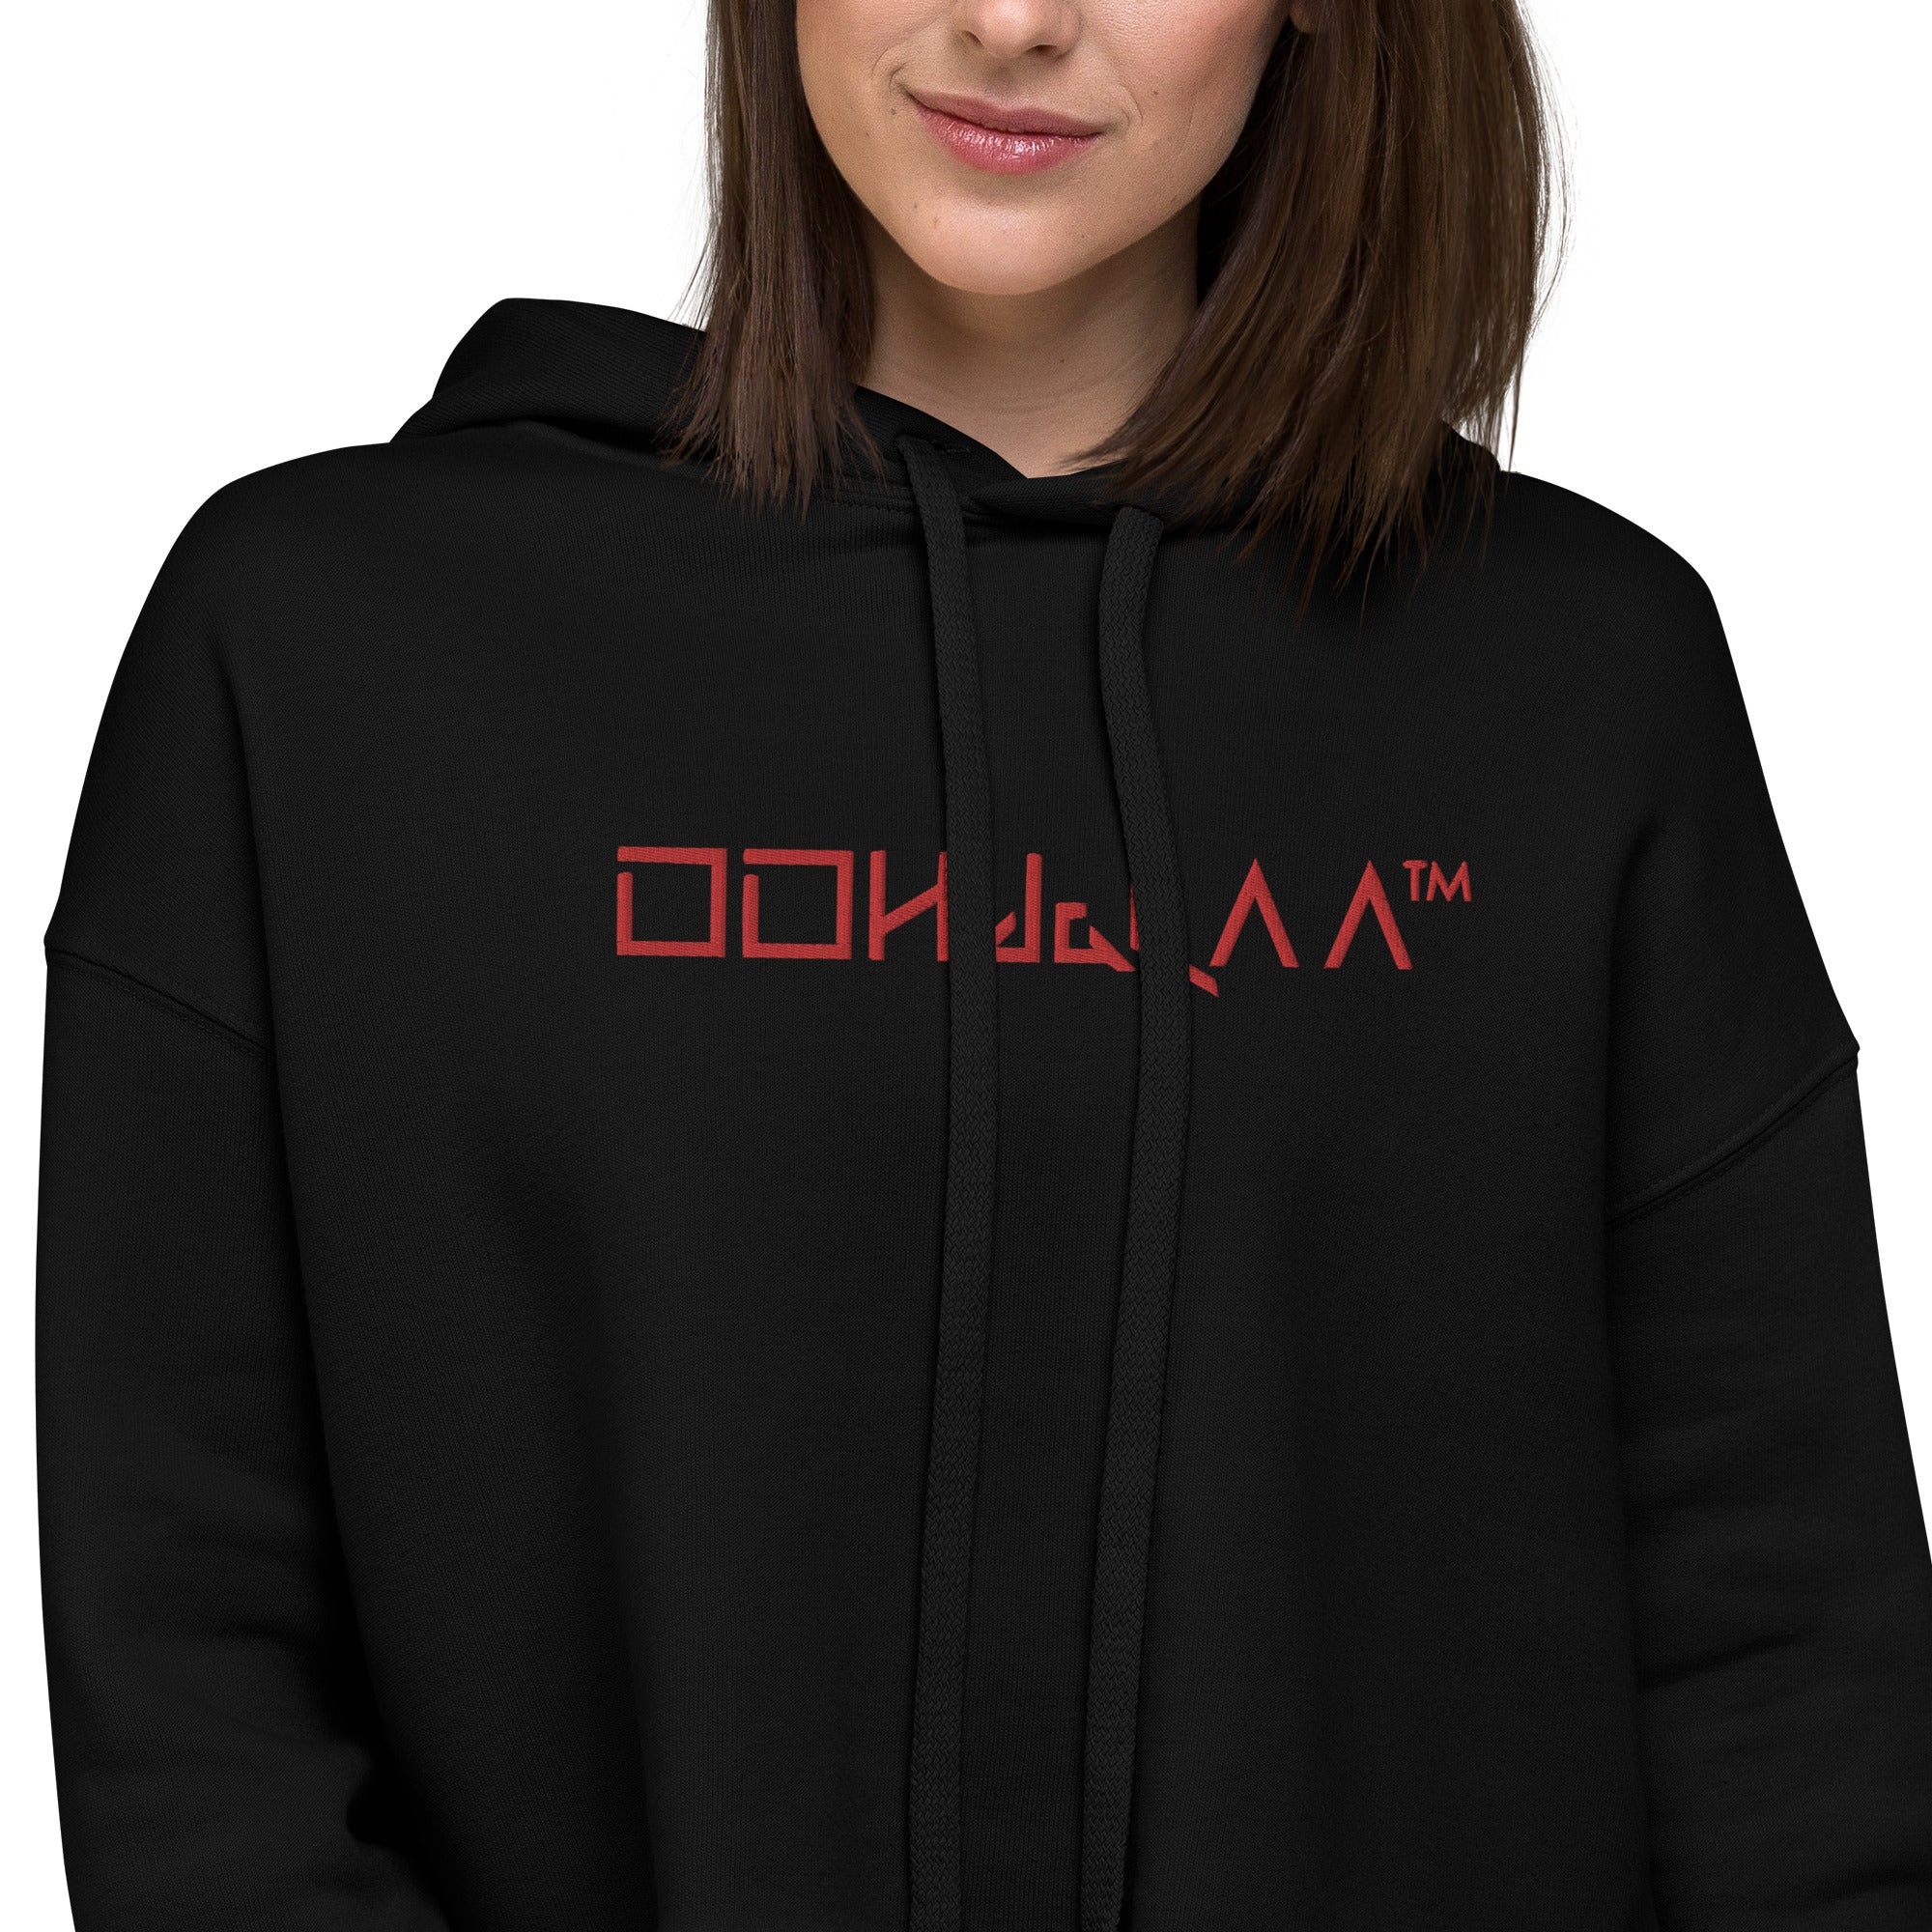 Stylish women's black cropped hoodie - OOHdaLAA Crop Top Hoodie, zoomed on